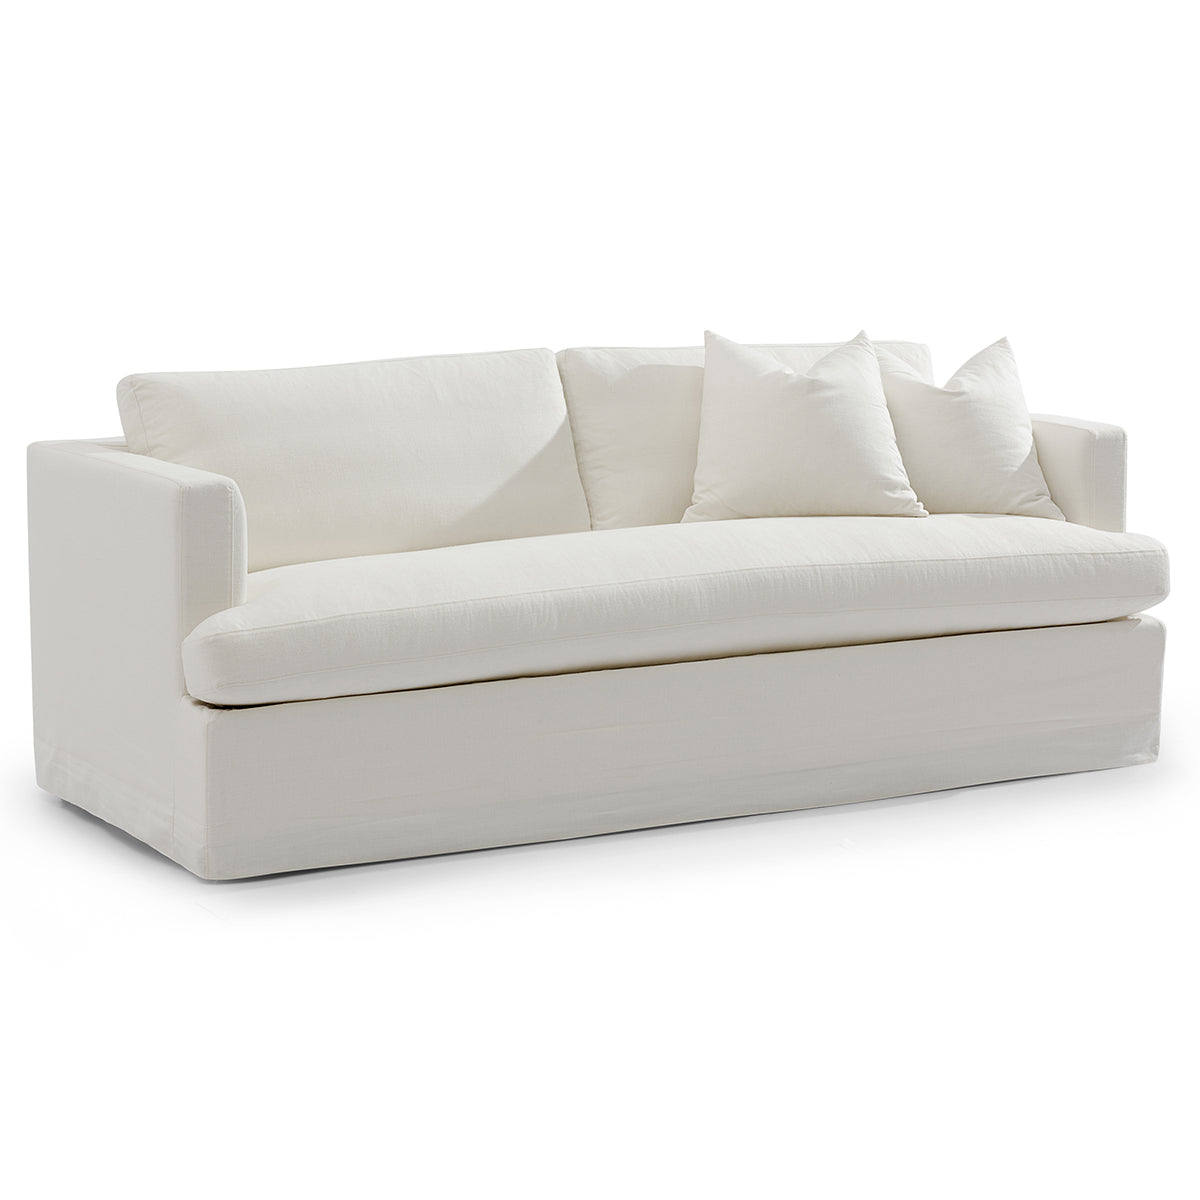 Birkshire 3 Seater Slip Cover Sofa - White Linen